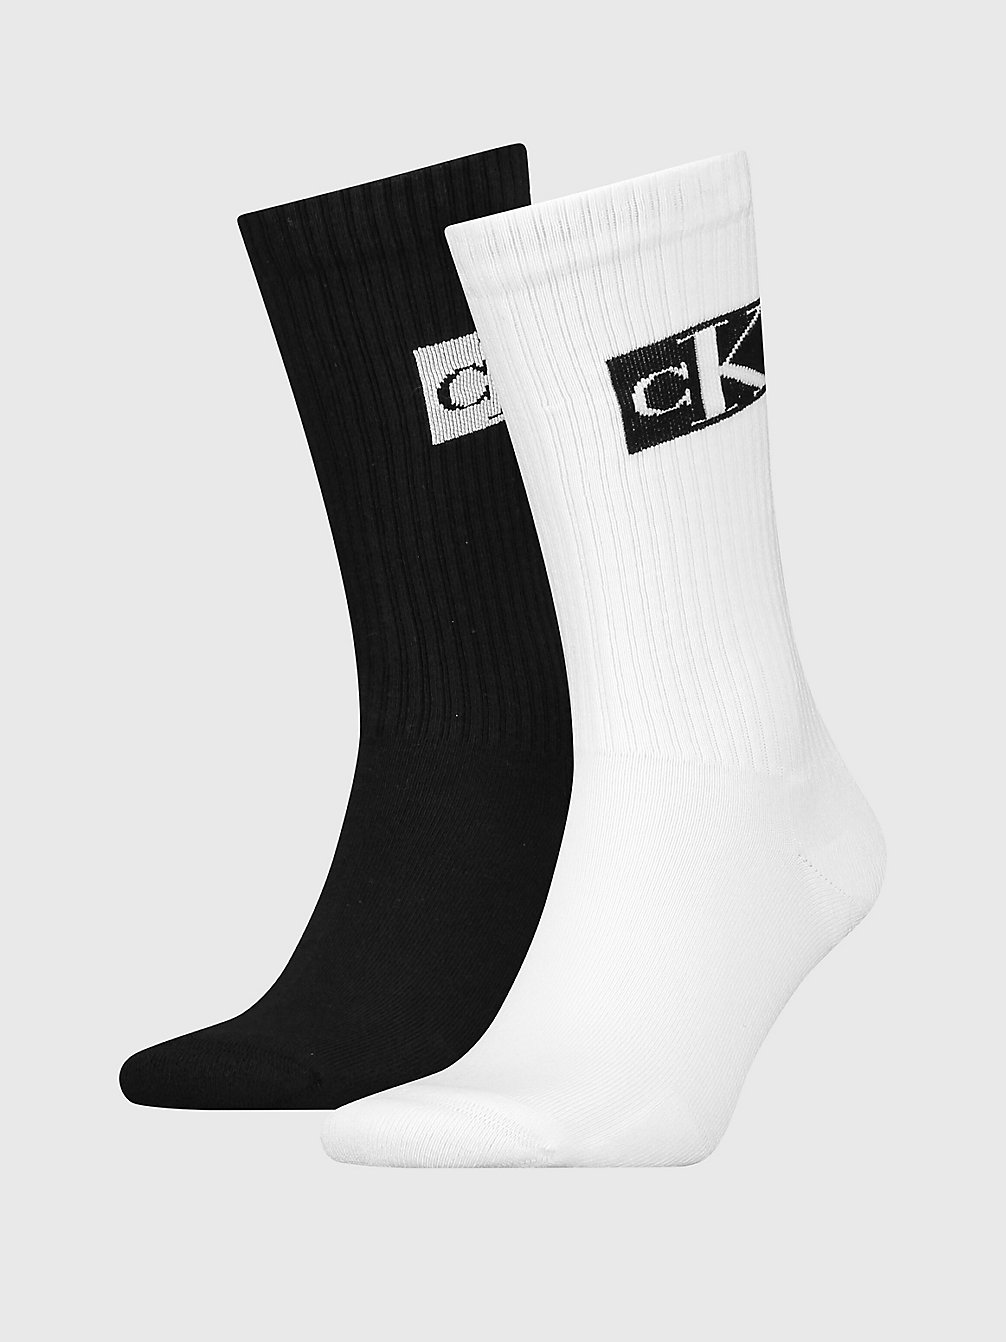 WHITE/BLACK 2 Pack Crew Socks undefined men Calvin Klein